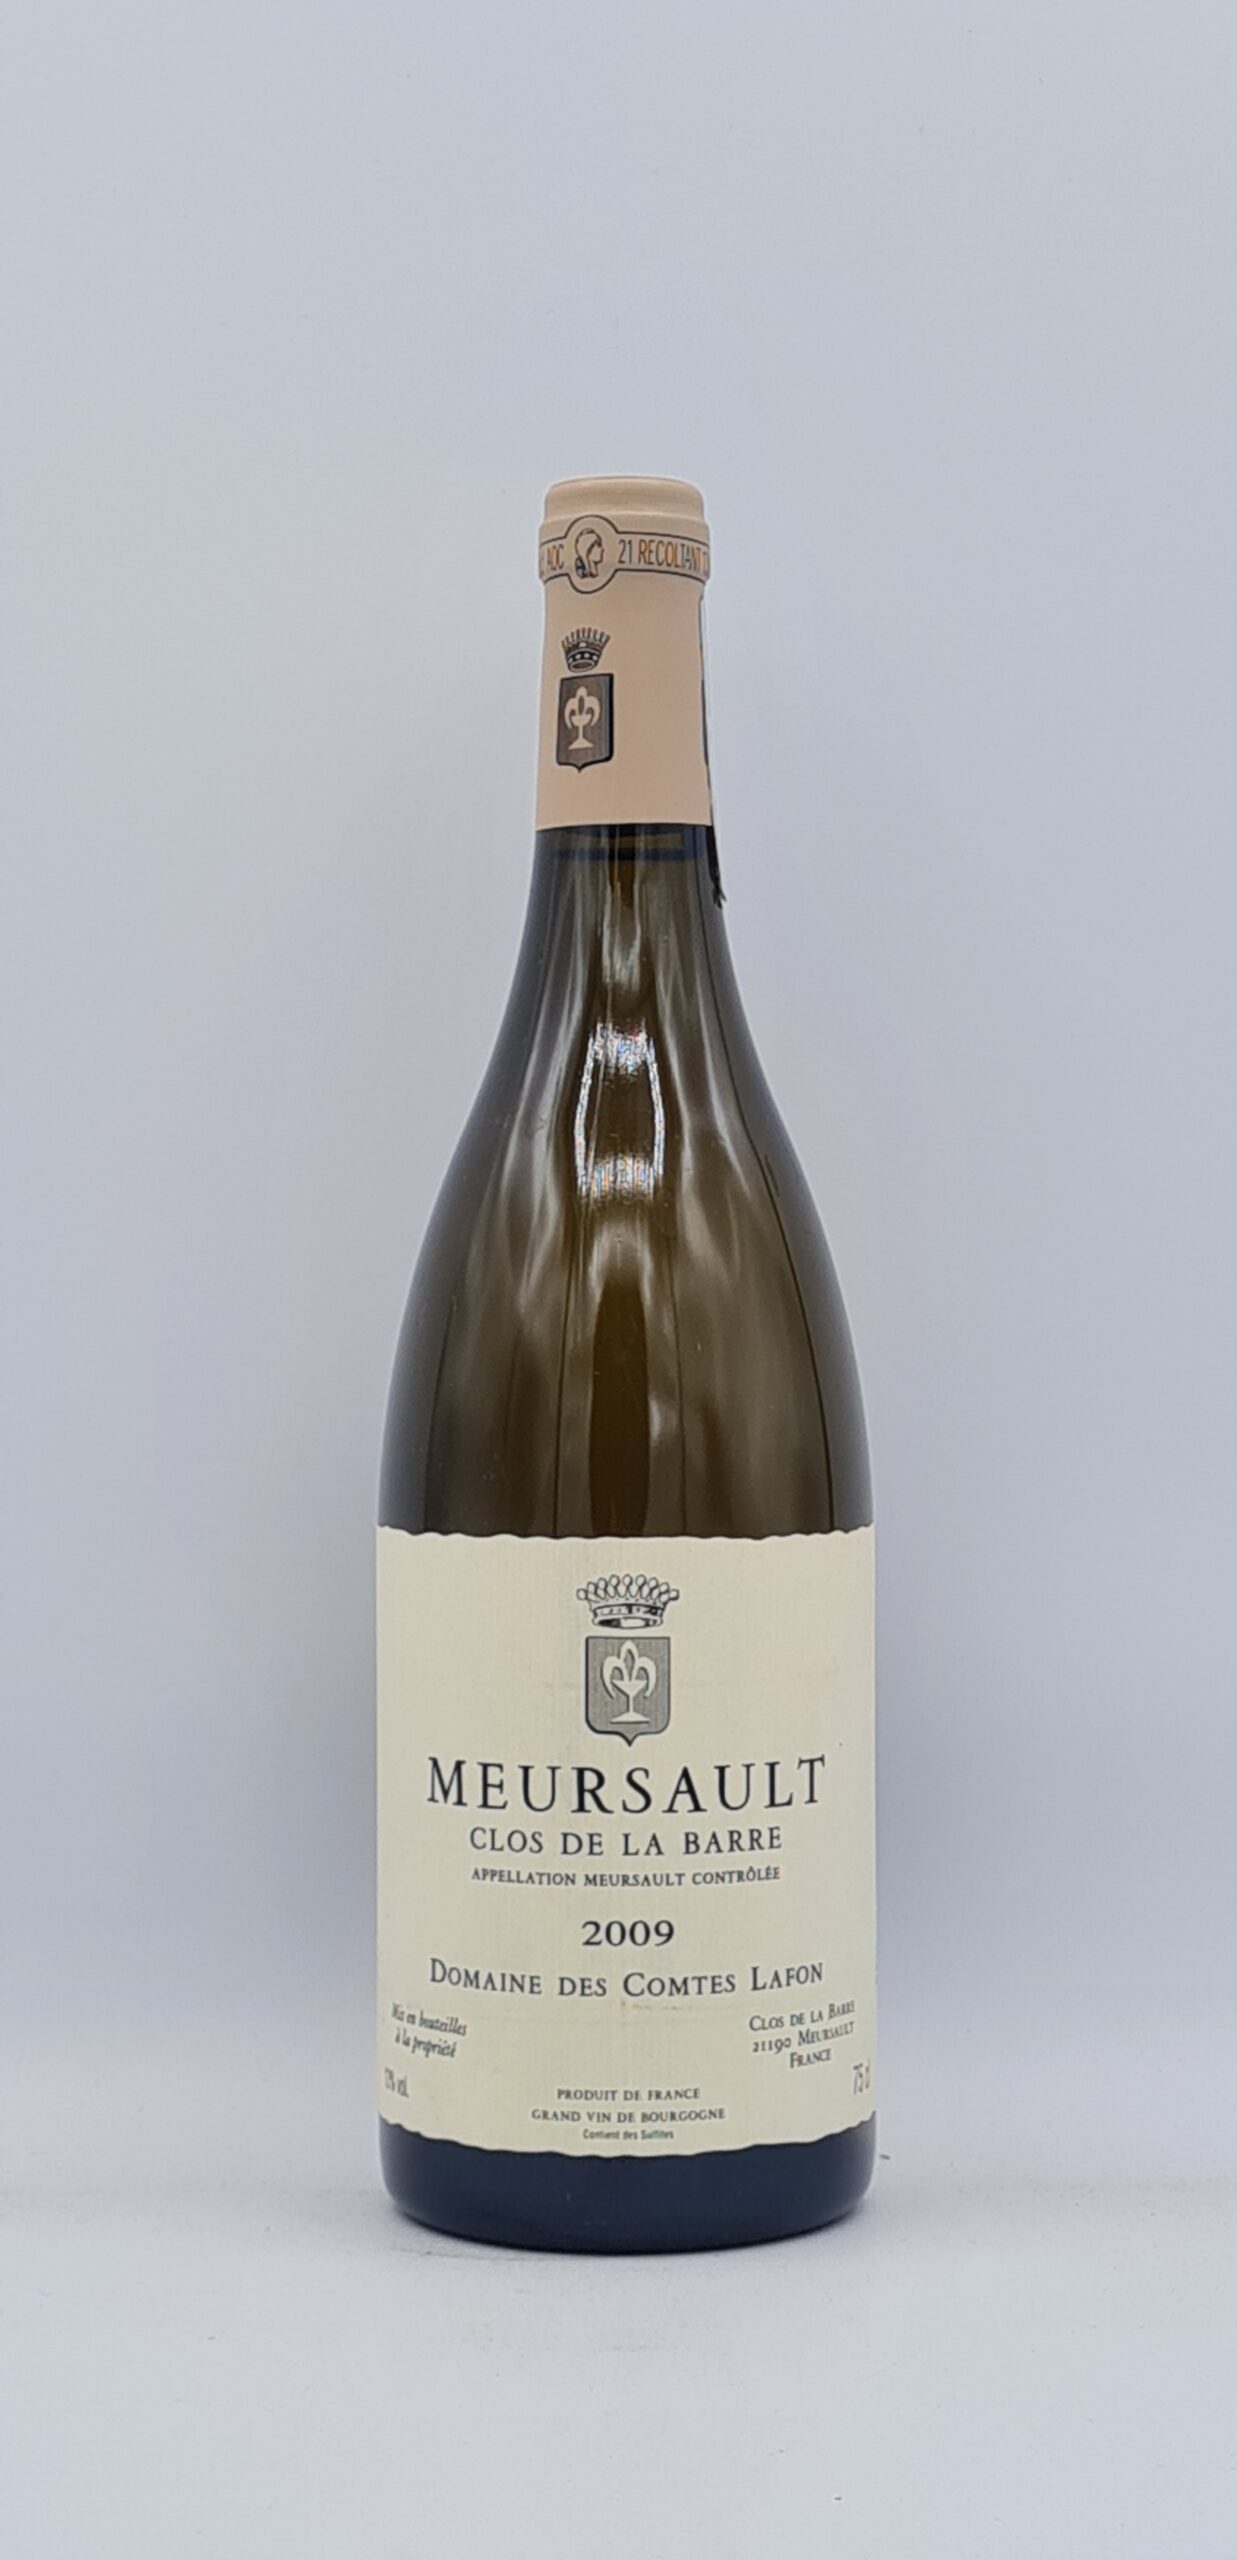 Bourgogne Meursault “Clos de la Barre” 2009 Domaine des Comte Lafon